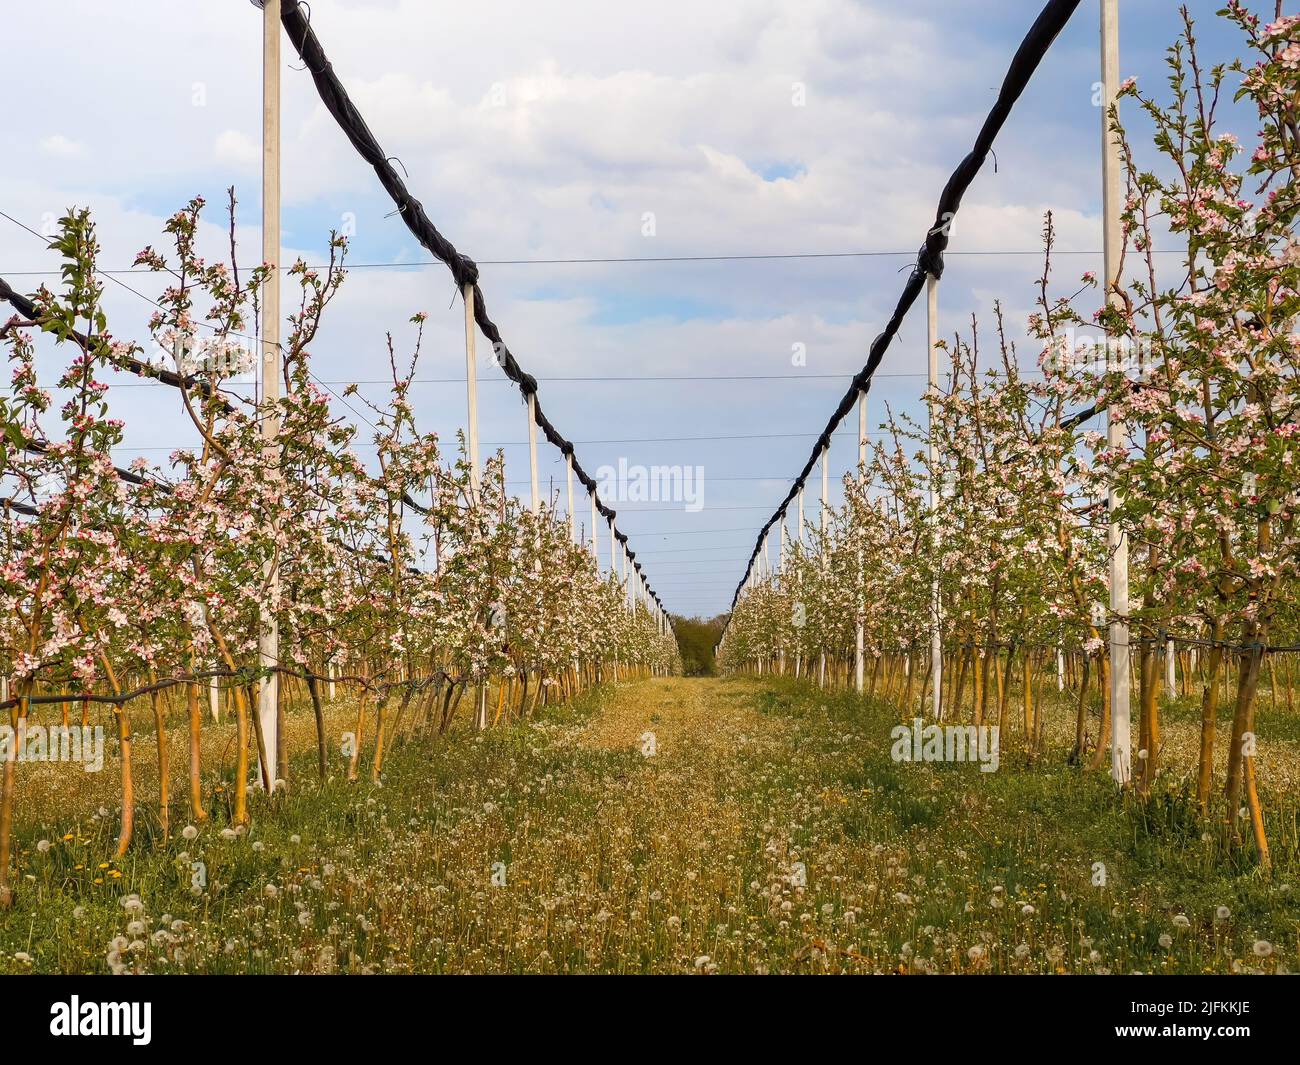 Huerto frutal de manzana con árboles en flor, perspectiva decreciente Foto de stock